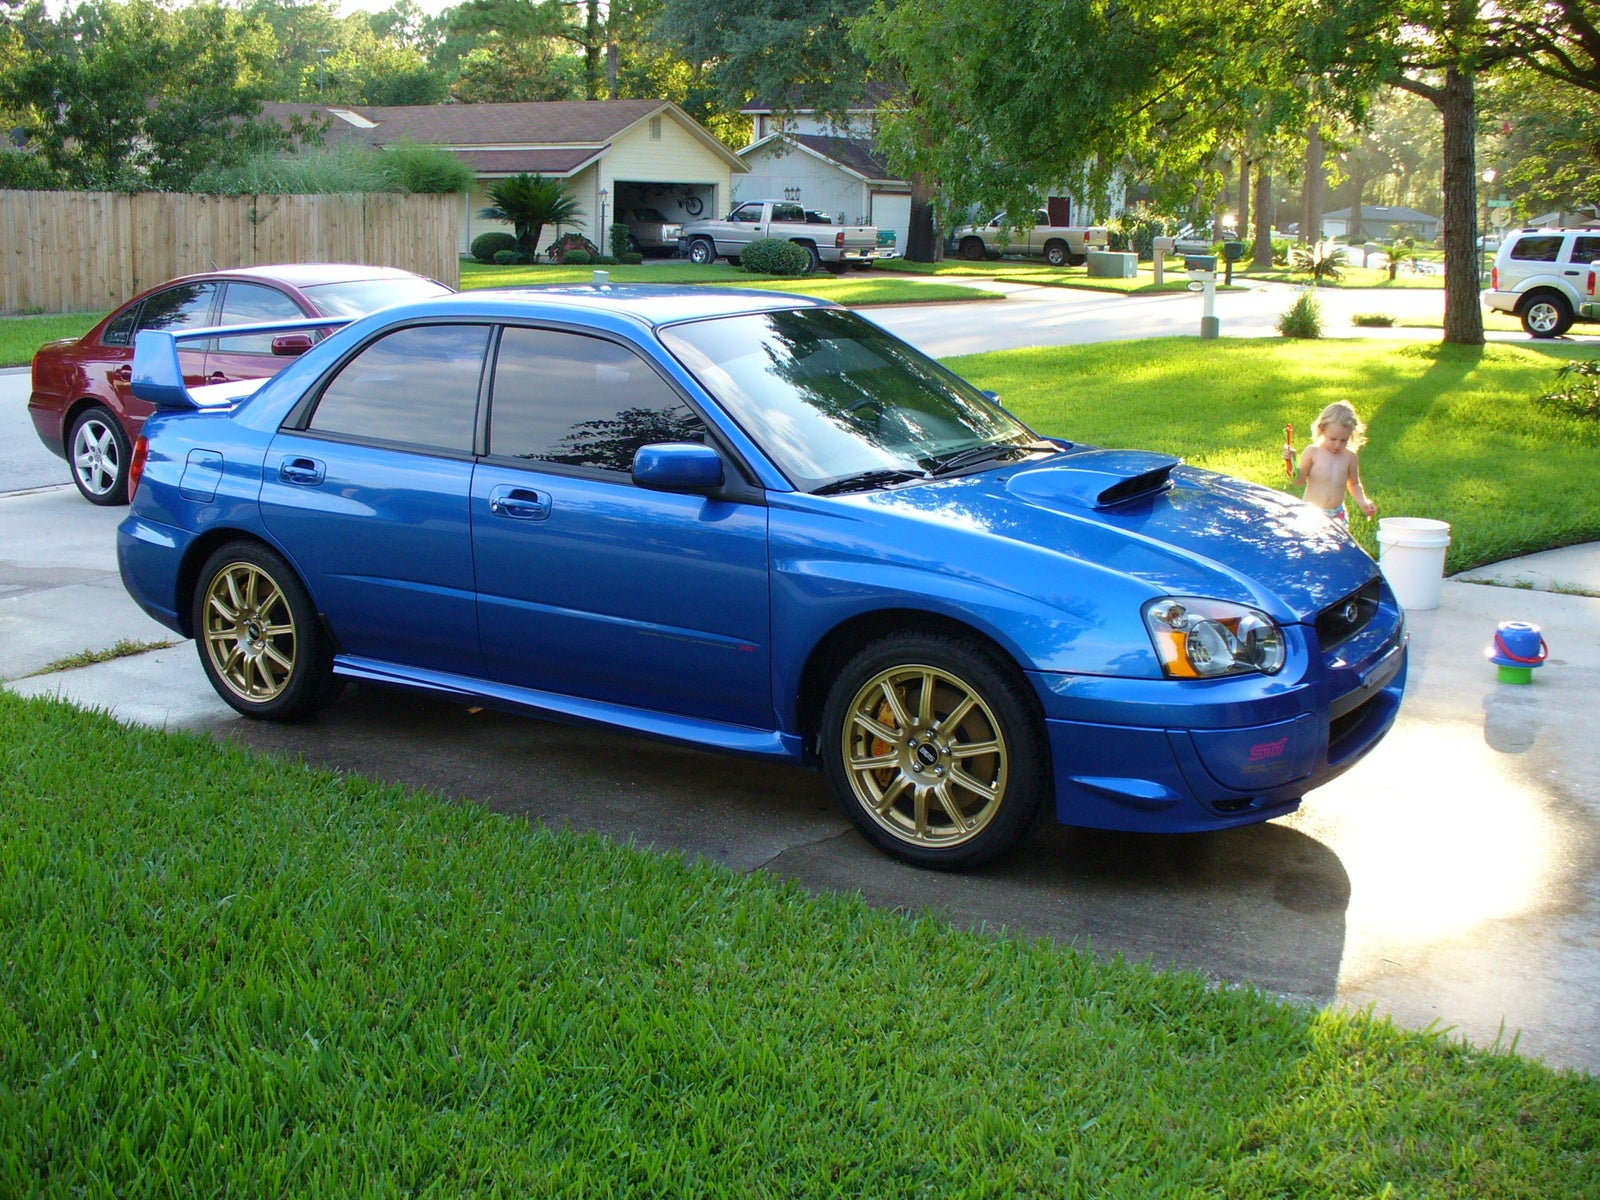 2004 Subaru Impreza WRX STi - Exterior Pictures - CarGurus